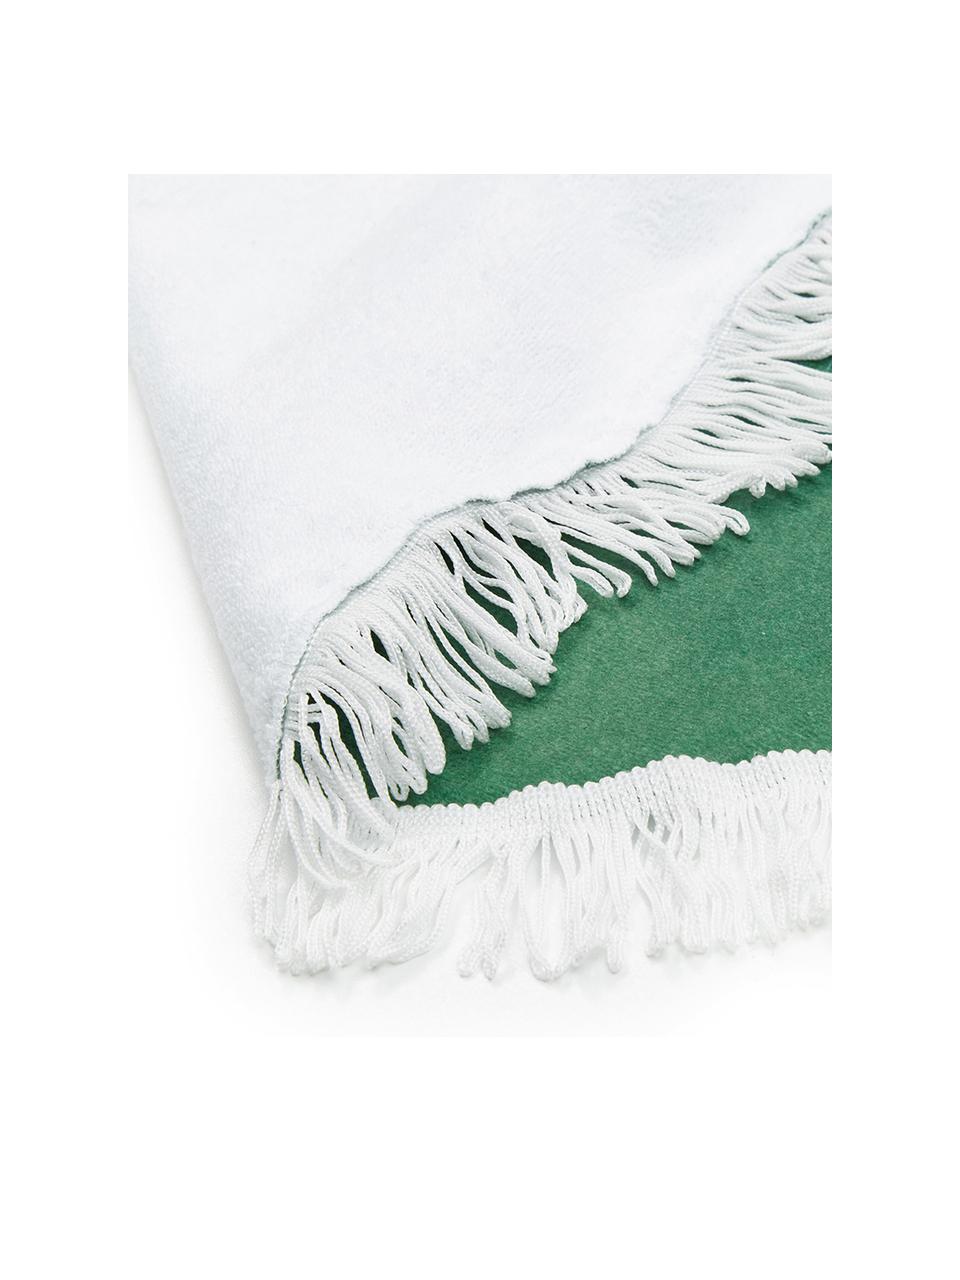 Ręcznik plażowy Leaves, 55% poliester, 45% bawełna
Bardzo niska gramatura 340 g/m², Zielony, biały, S 139 x D 150 cm